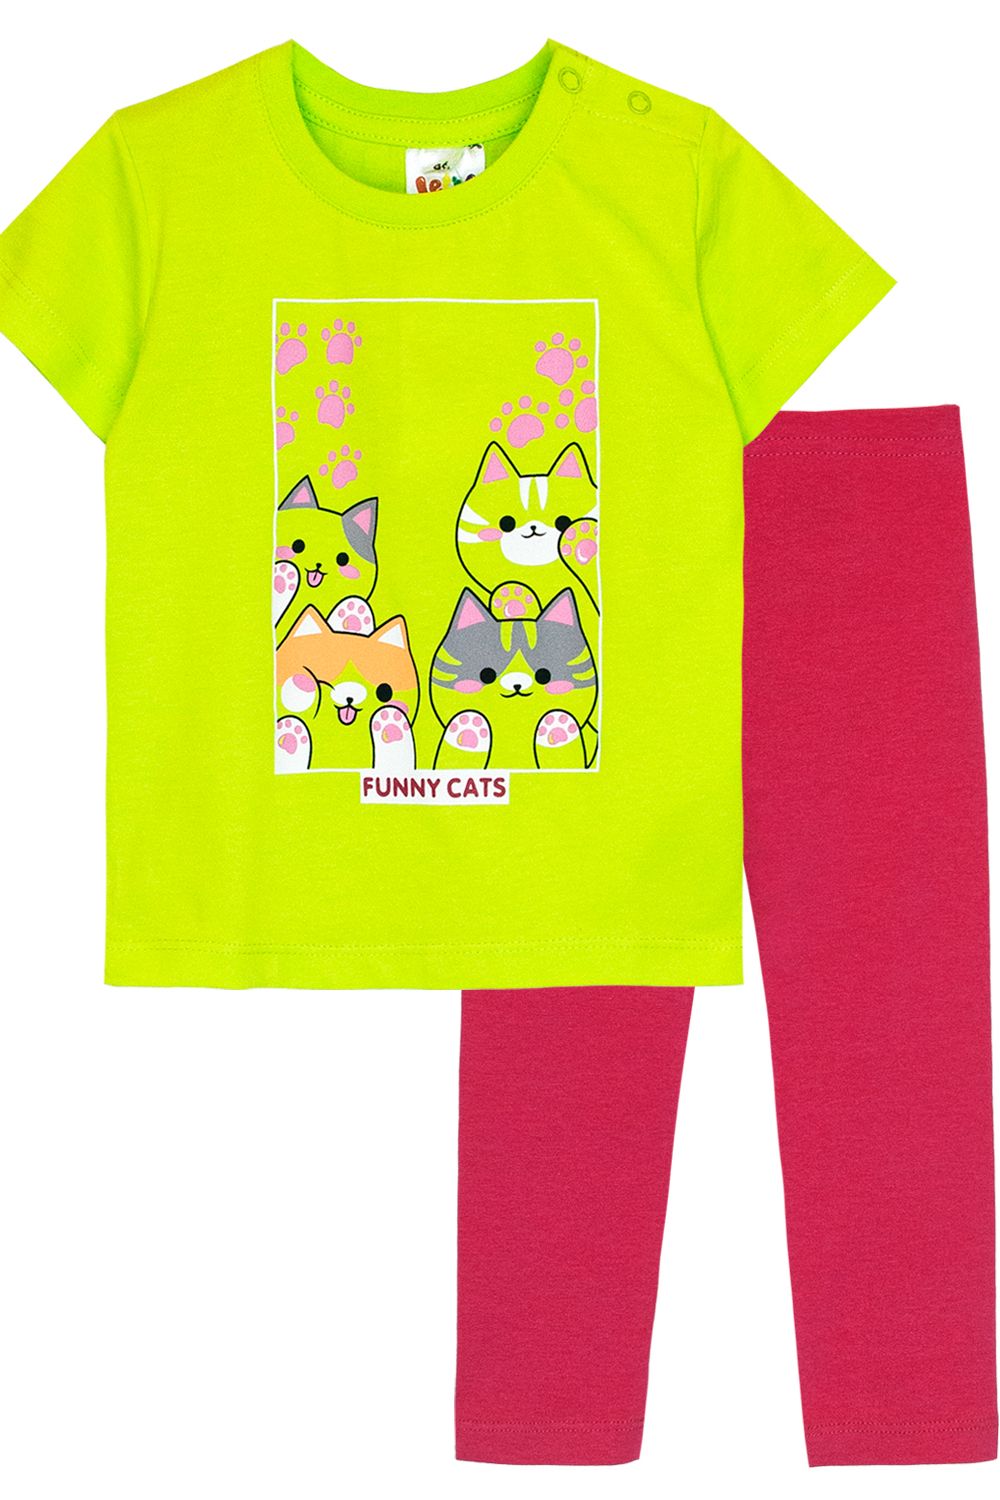 Комплект для девочки (футболка+лосины) 41135 (м) - салатовый/малиновый